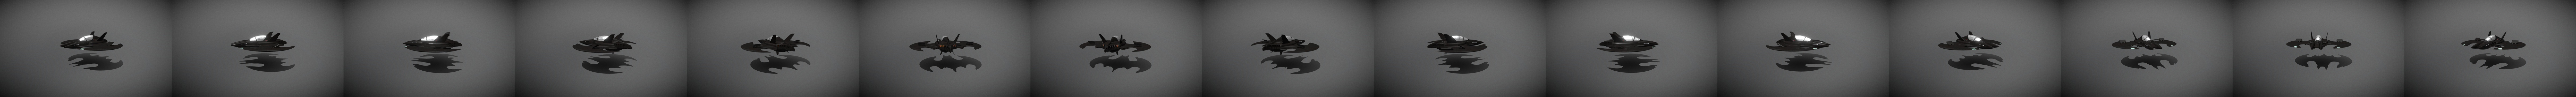 Batwing 3D models - Sketchfab